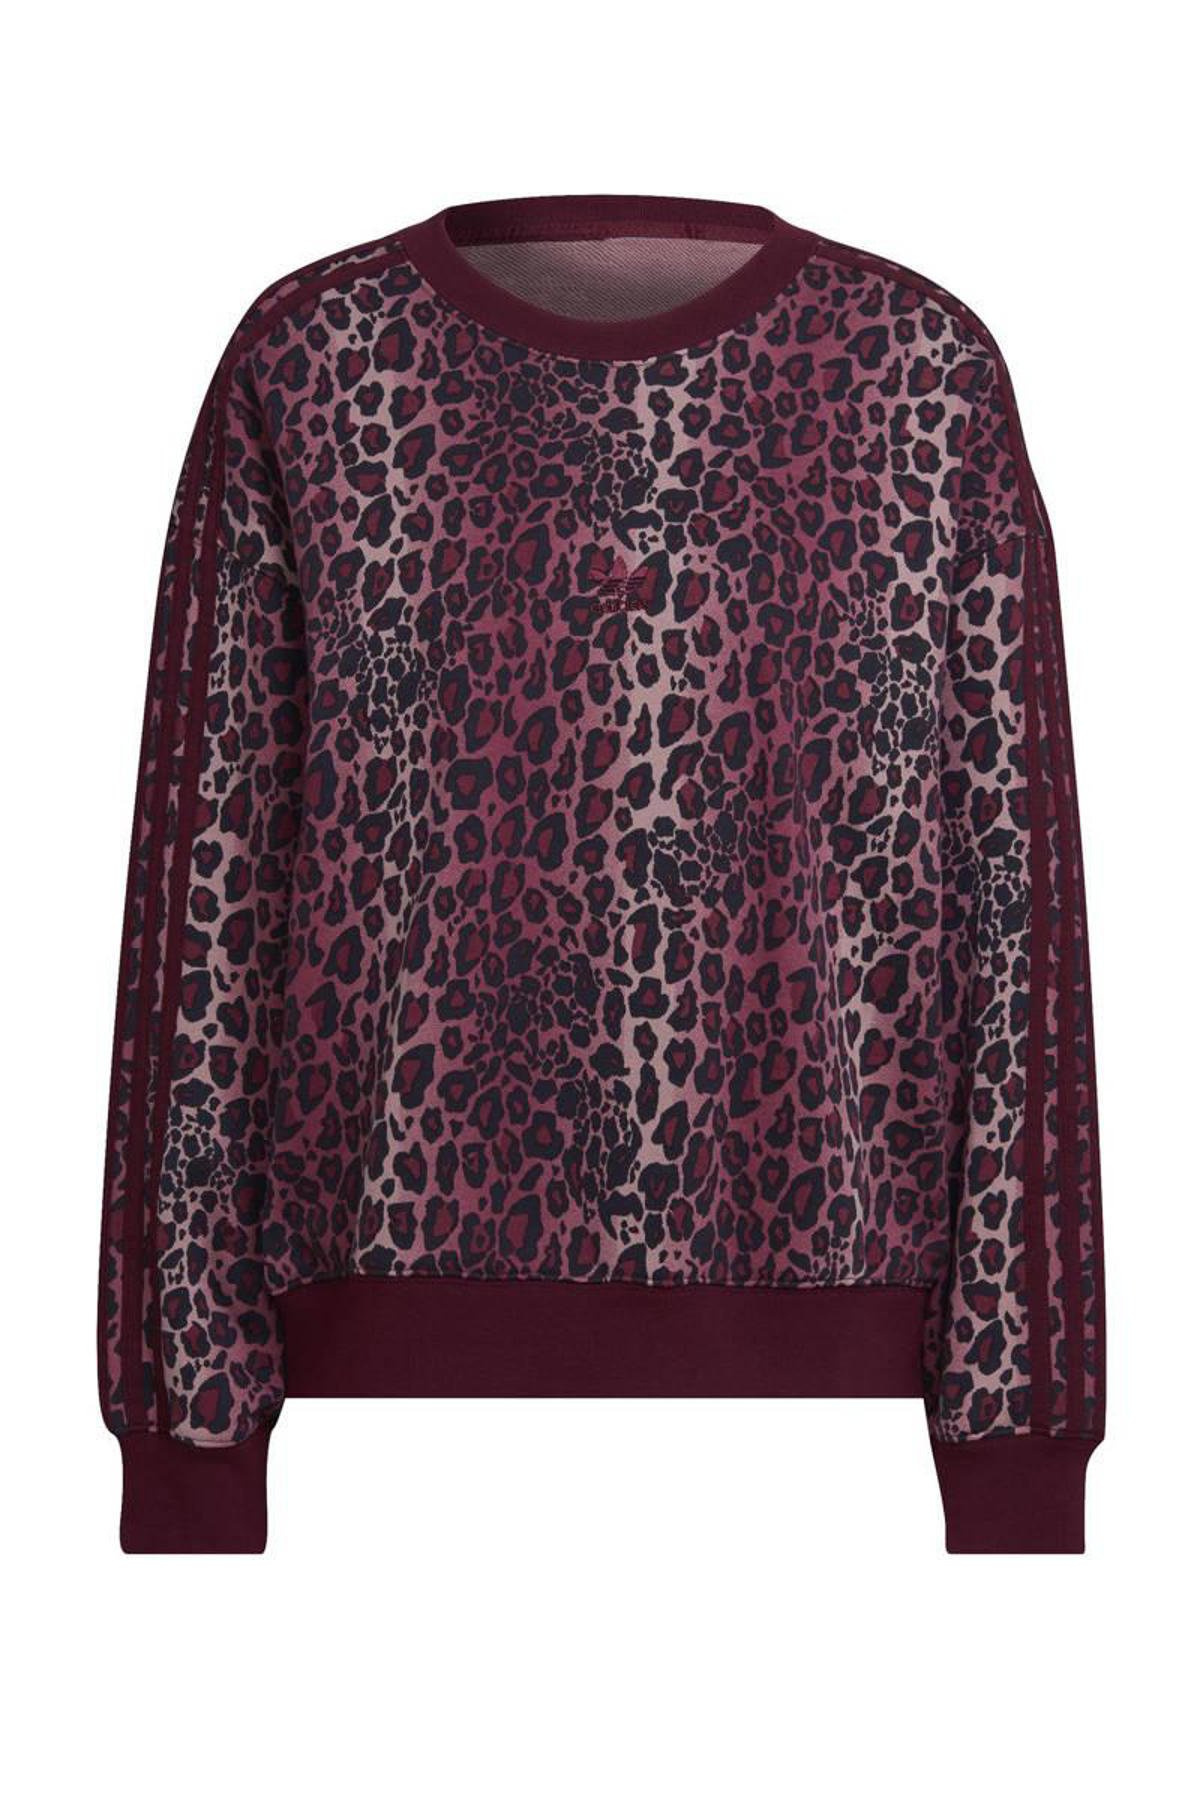 geleidelijk Verschrikkelijk evenwicht adidas Originals sweater donkerrood/luipaard print | wehkamp